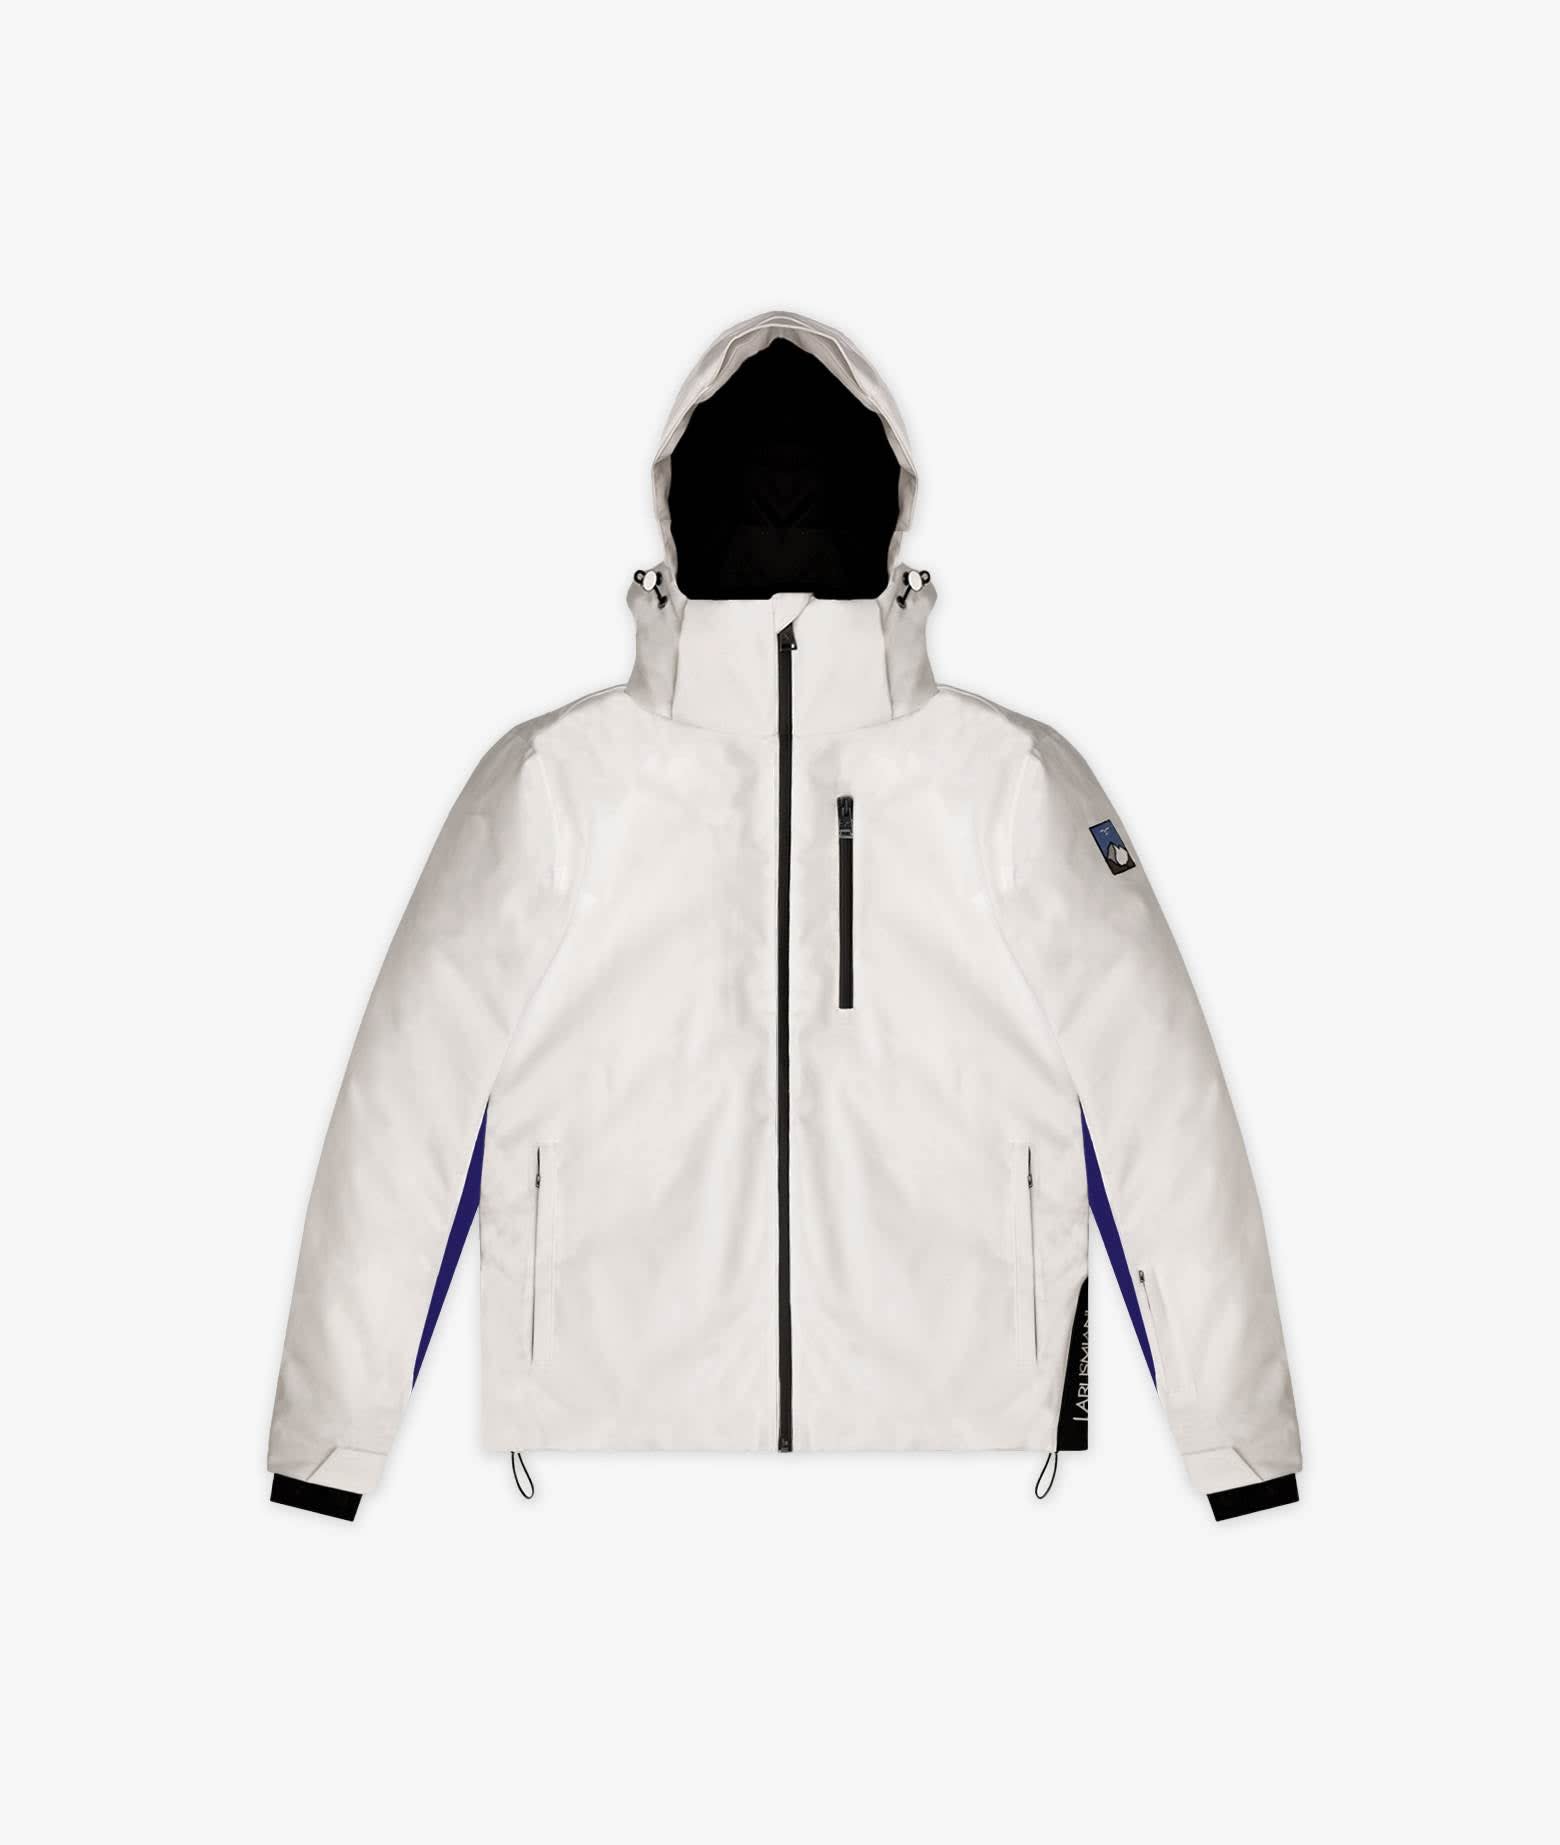 Larusmiani Ski Jacket Jacket In White